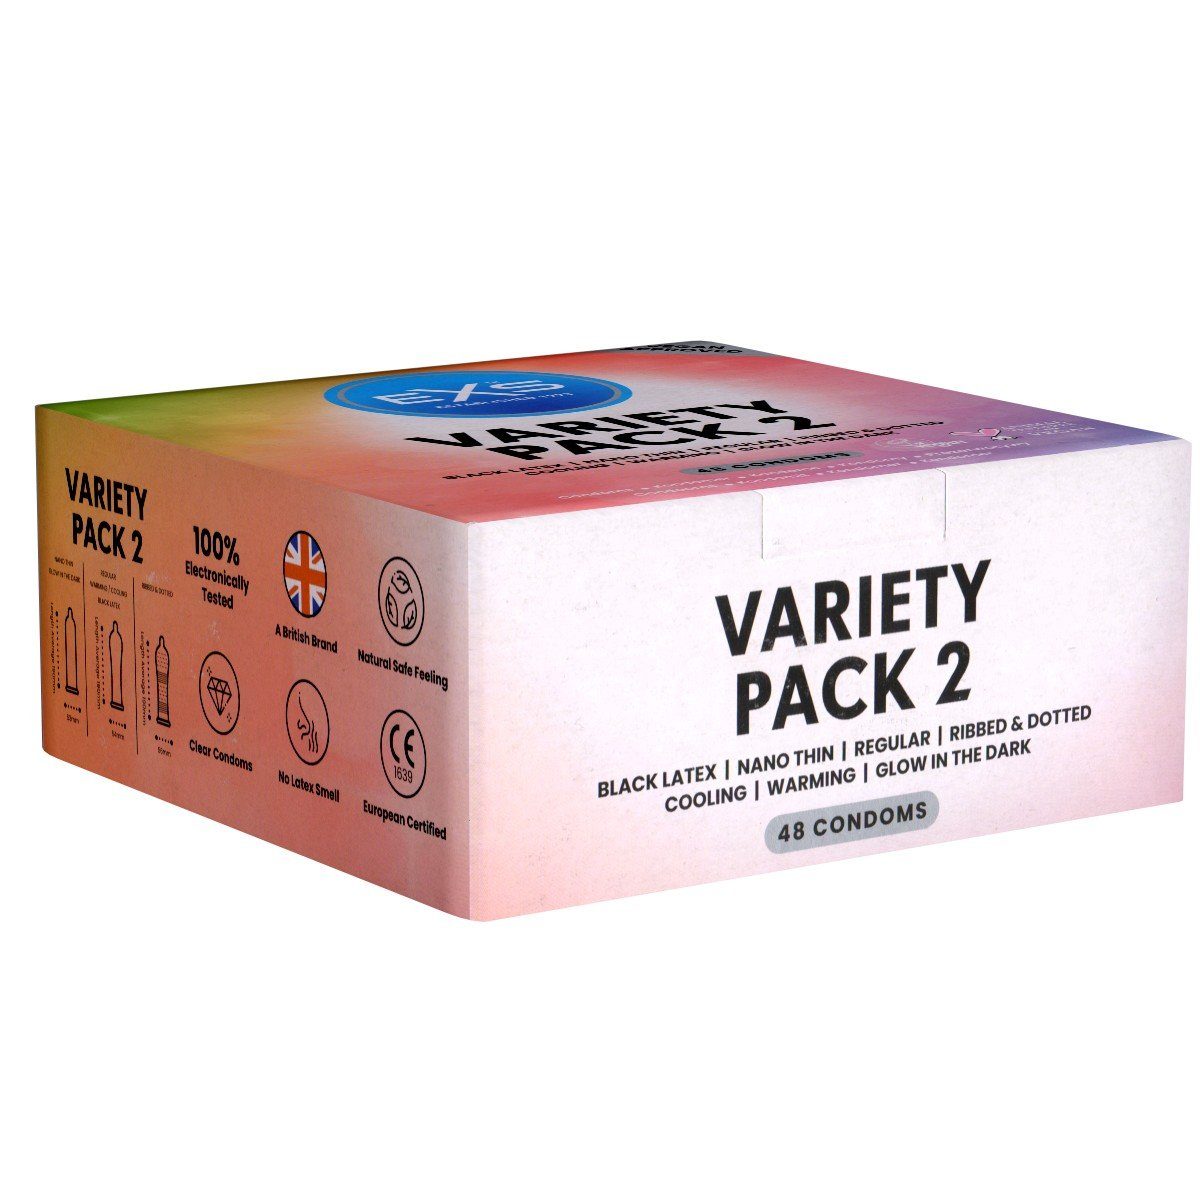 EXS Kondome Variety Pack 2 - gemischte Kondome Packung mit, 48 St., sieben verschiedene Sorten zum Probieren und Genießen